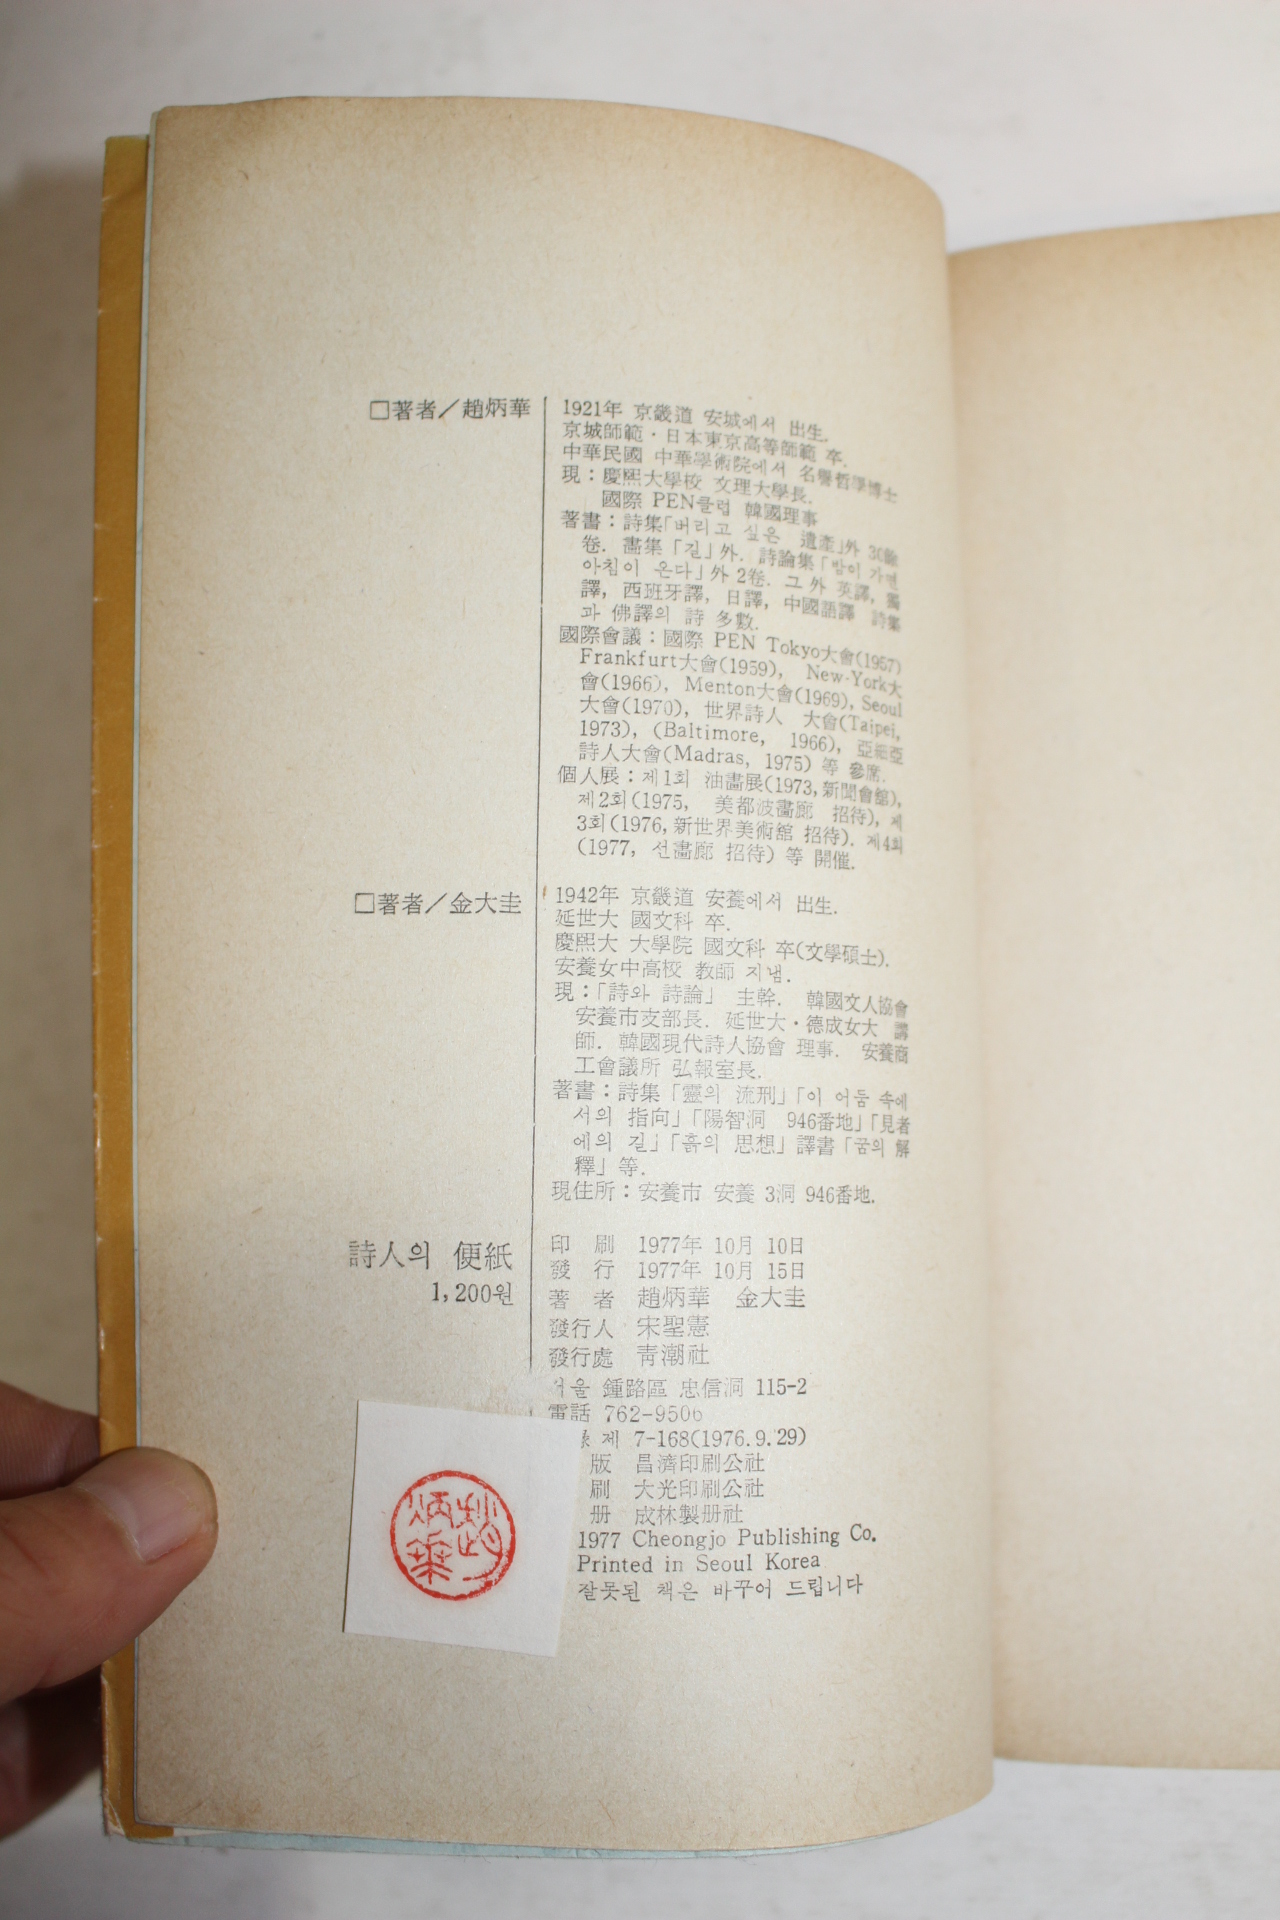 1977년 조병화(趙炳華) 시인의 편지